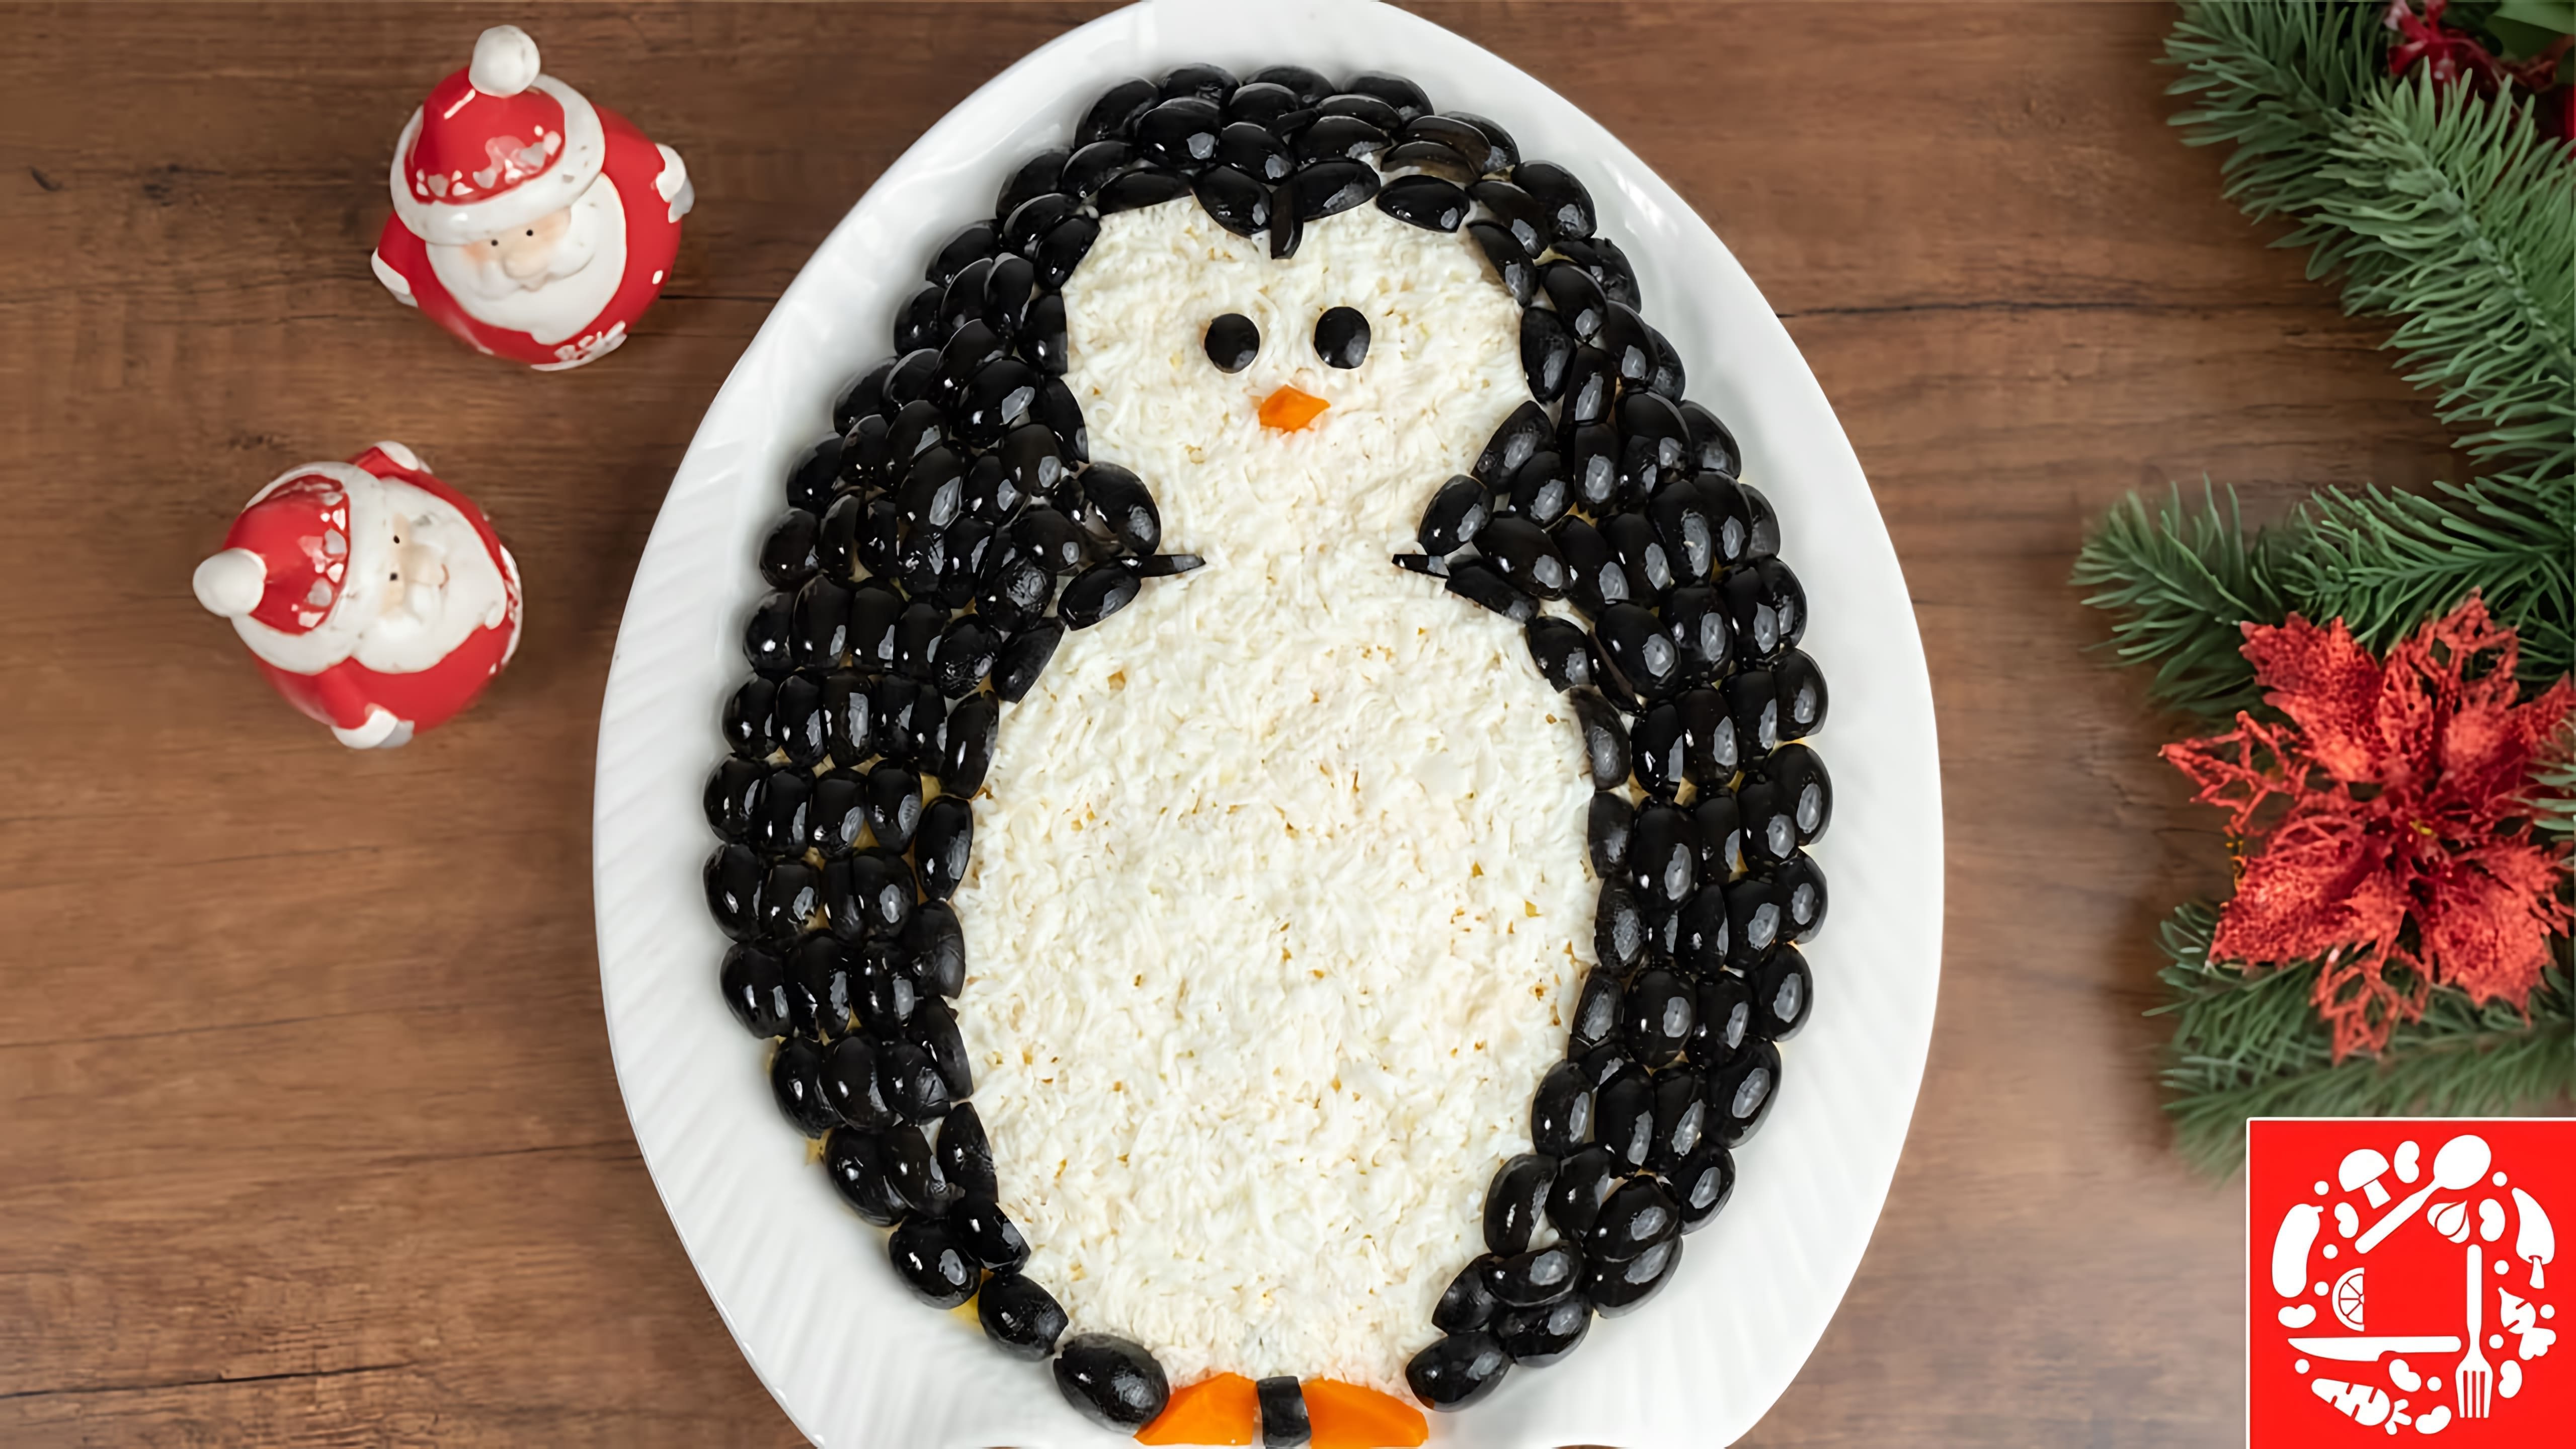 В этом видео демонстрируется рецепт салата "Пингвин" на Новый год